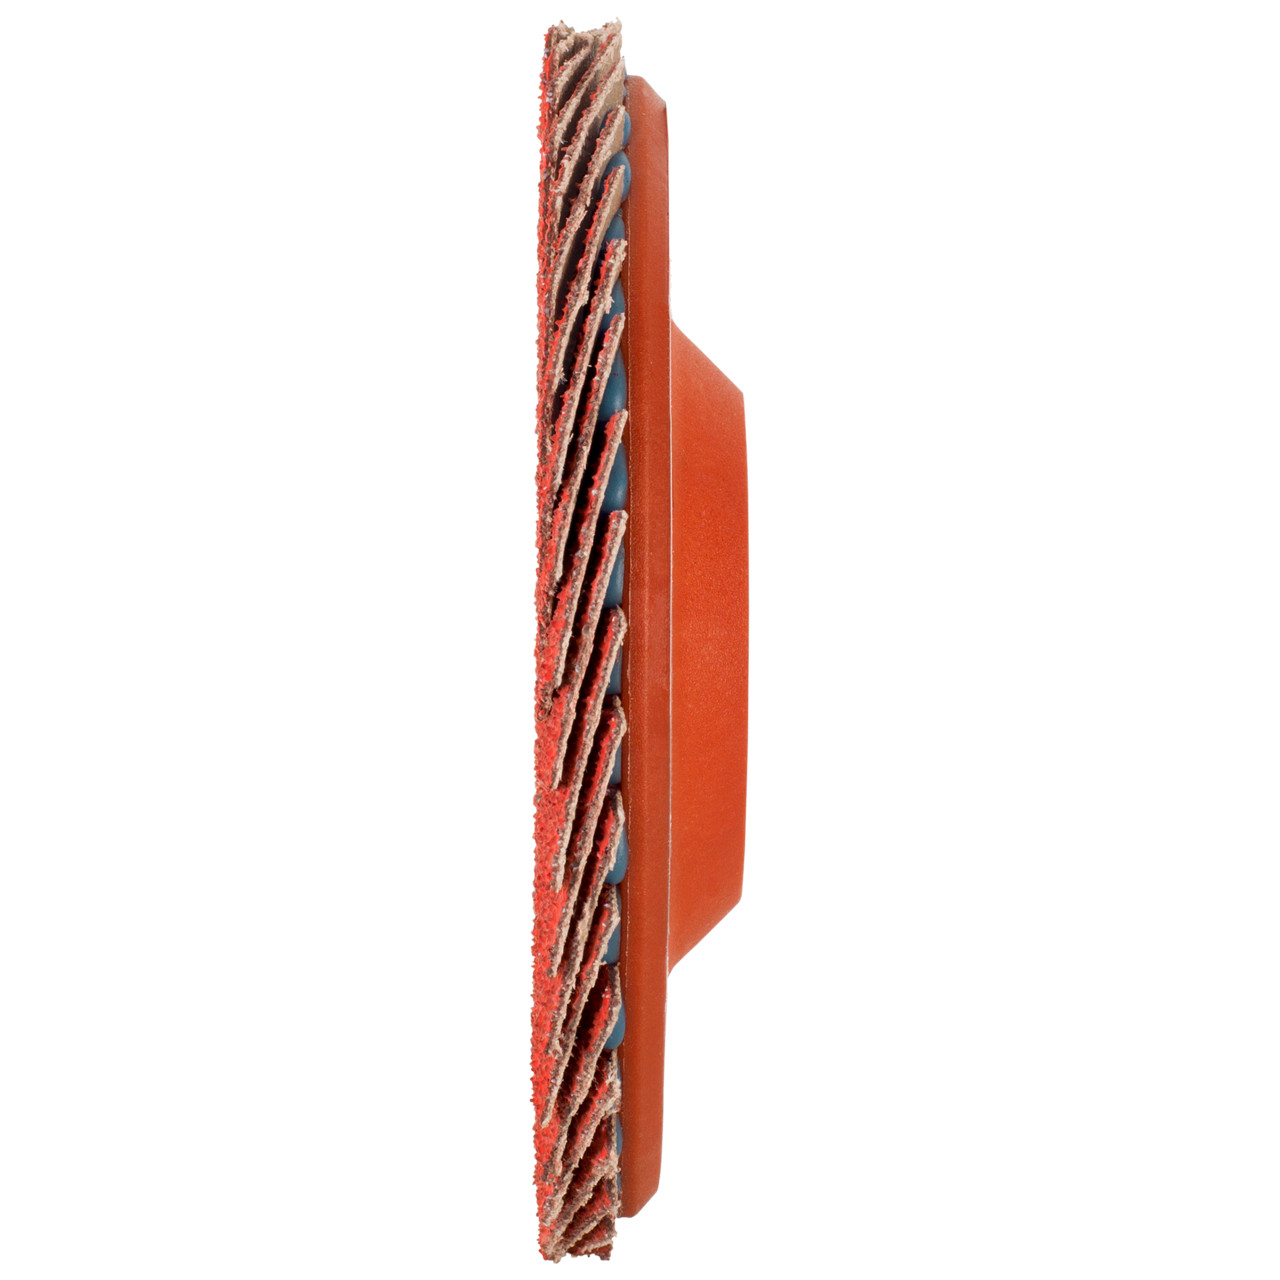 Tyrolit Rondelle éventail DxH 125x22,23 CERAMIC pour acier inoxydable, P40, forme : 28N - modèle droit (corps de support en plastique), art. 719846